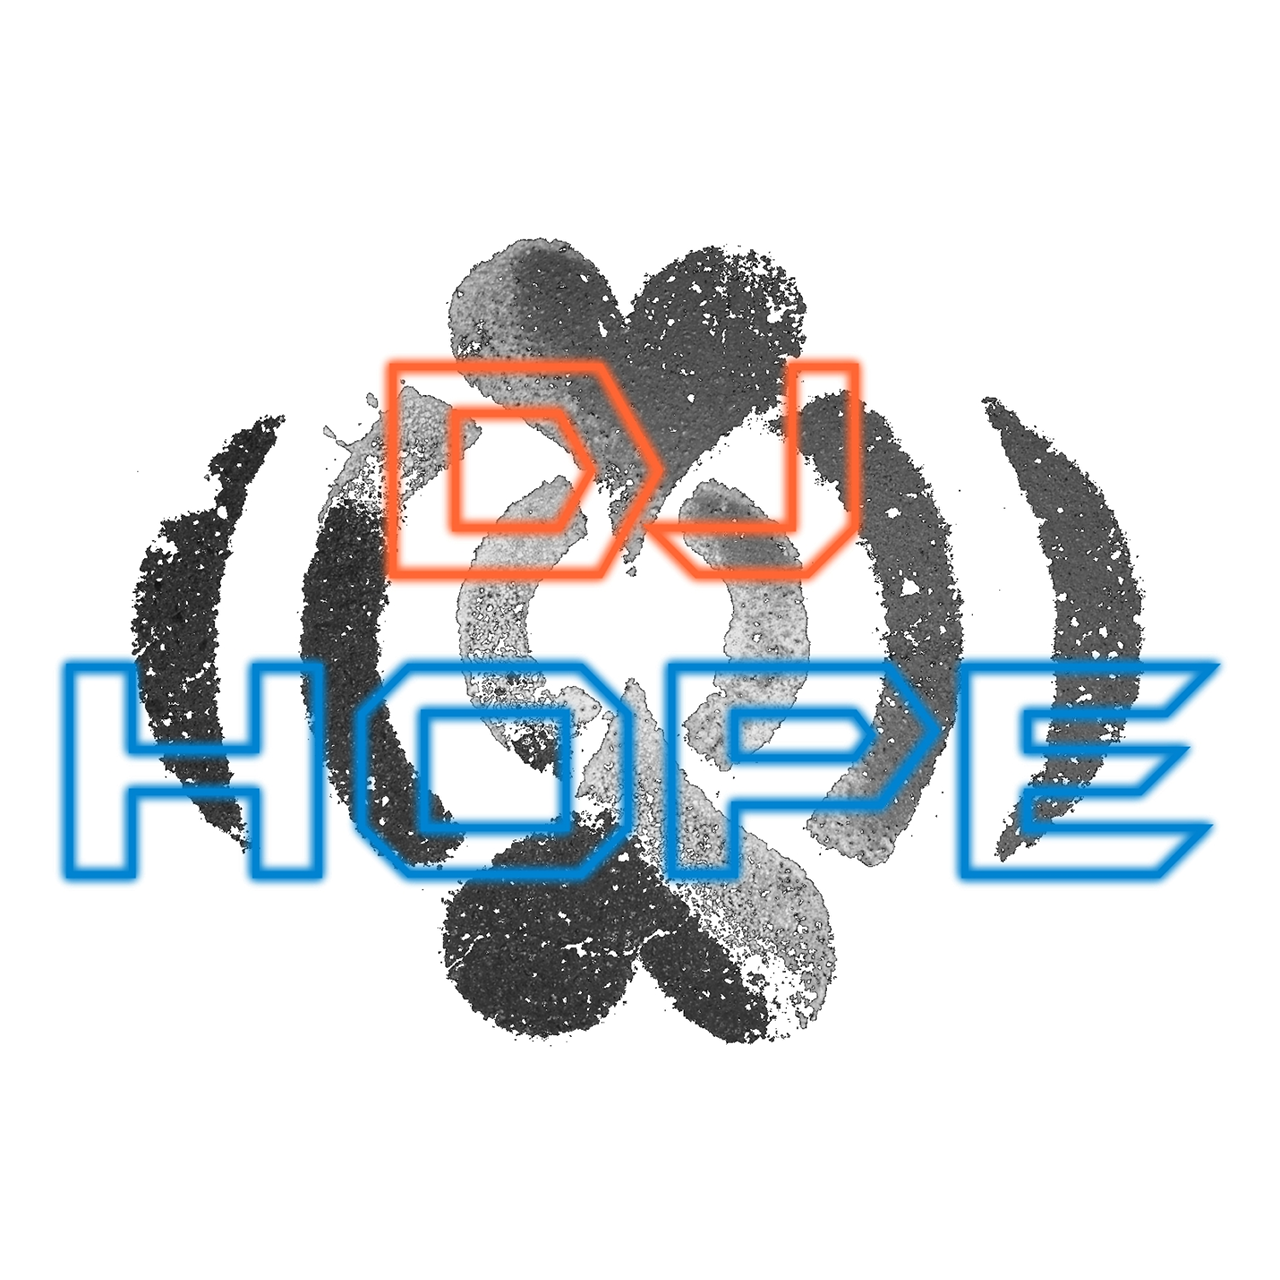 DJ Hope aka DJ PJ